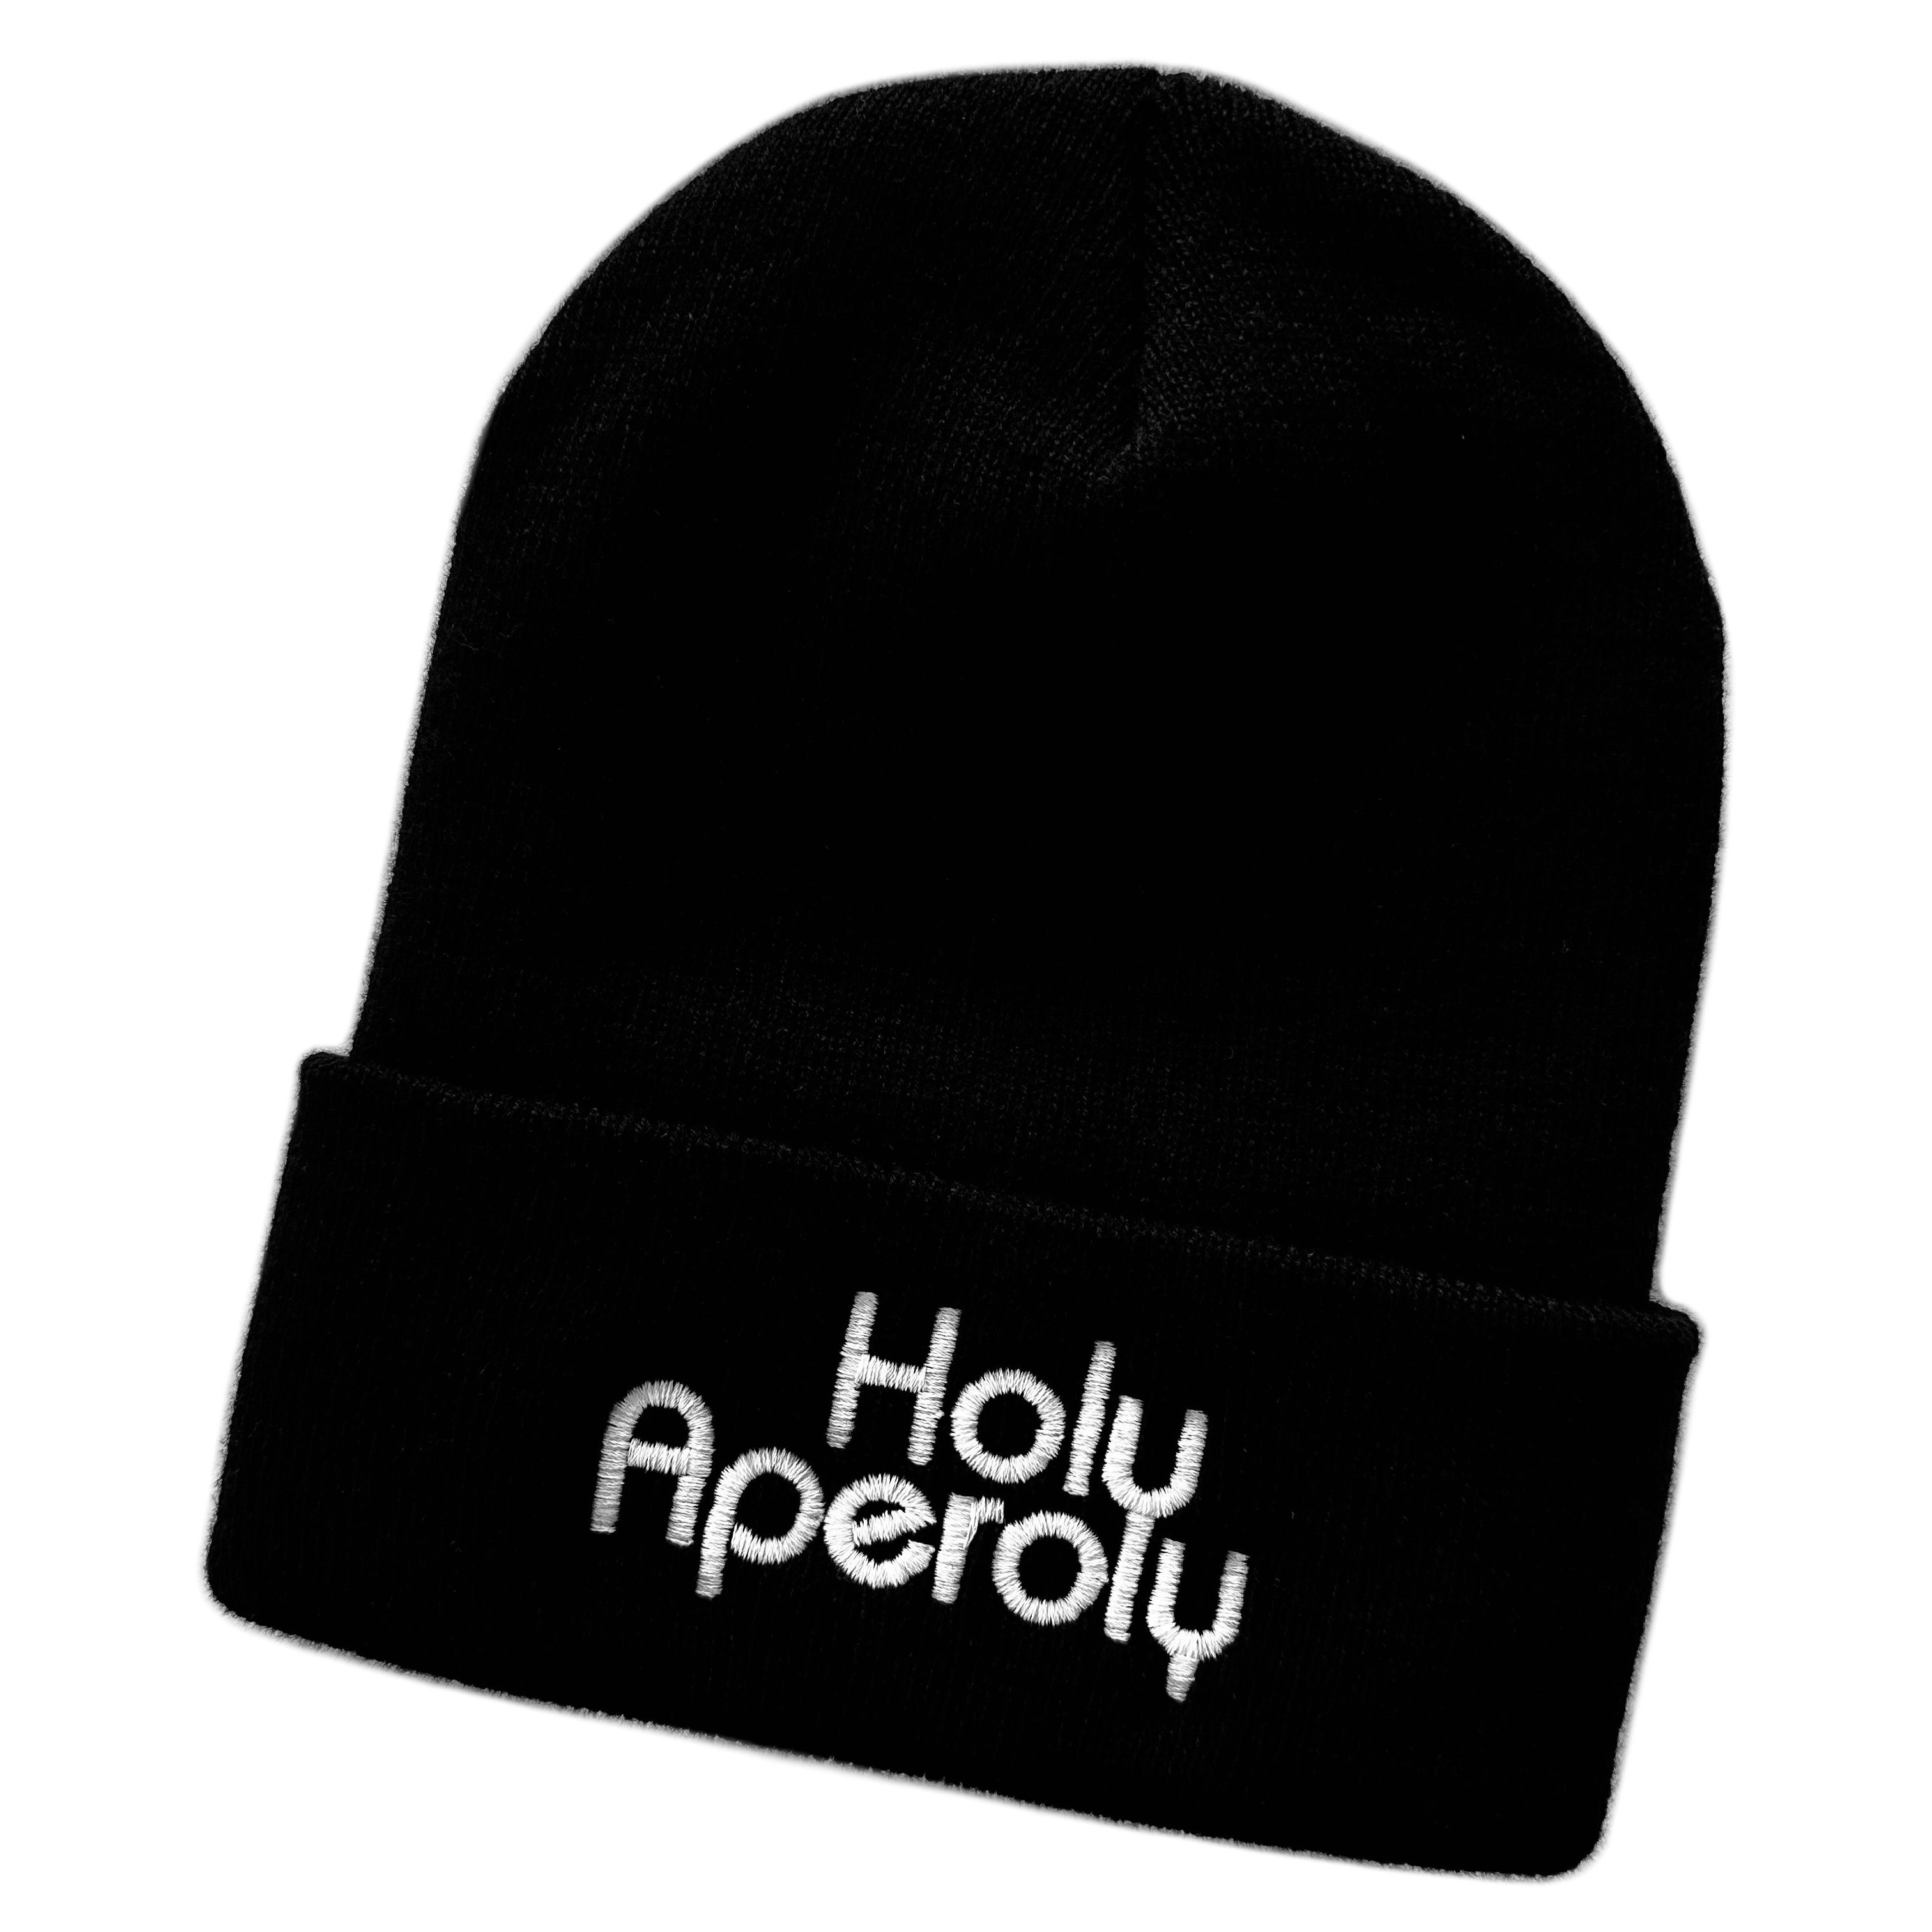 Schnoschi Strickmütze Wintermütze Holy Aperoly (unisex) bestickt Statement Spruch Streetwear mit breitem Umschlag